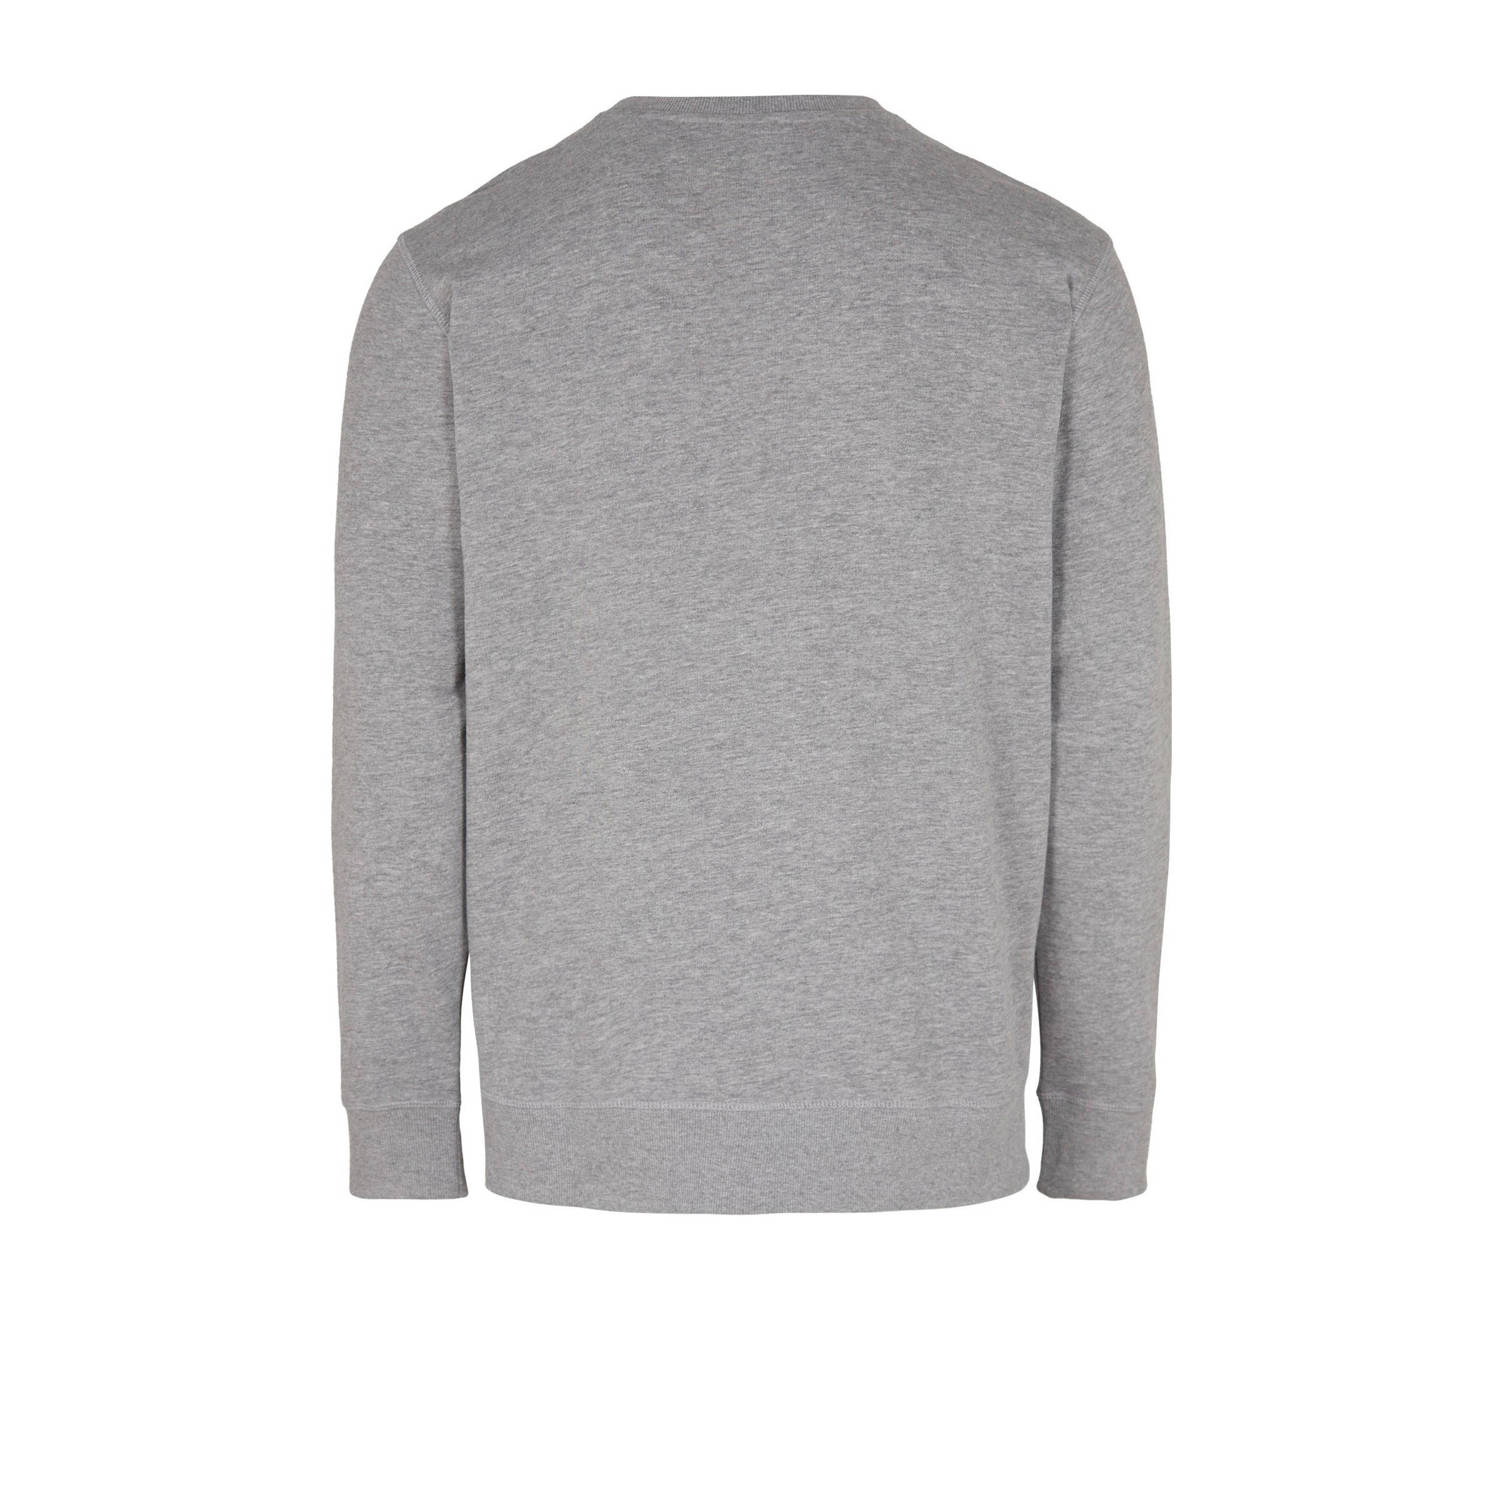 O'Neill sweater met logo grijs